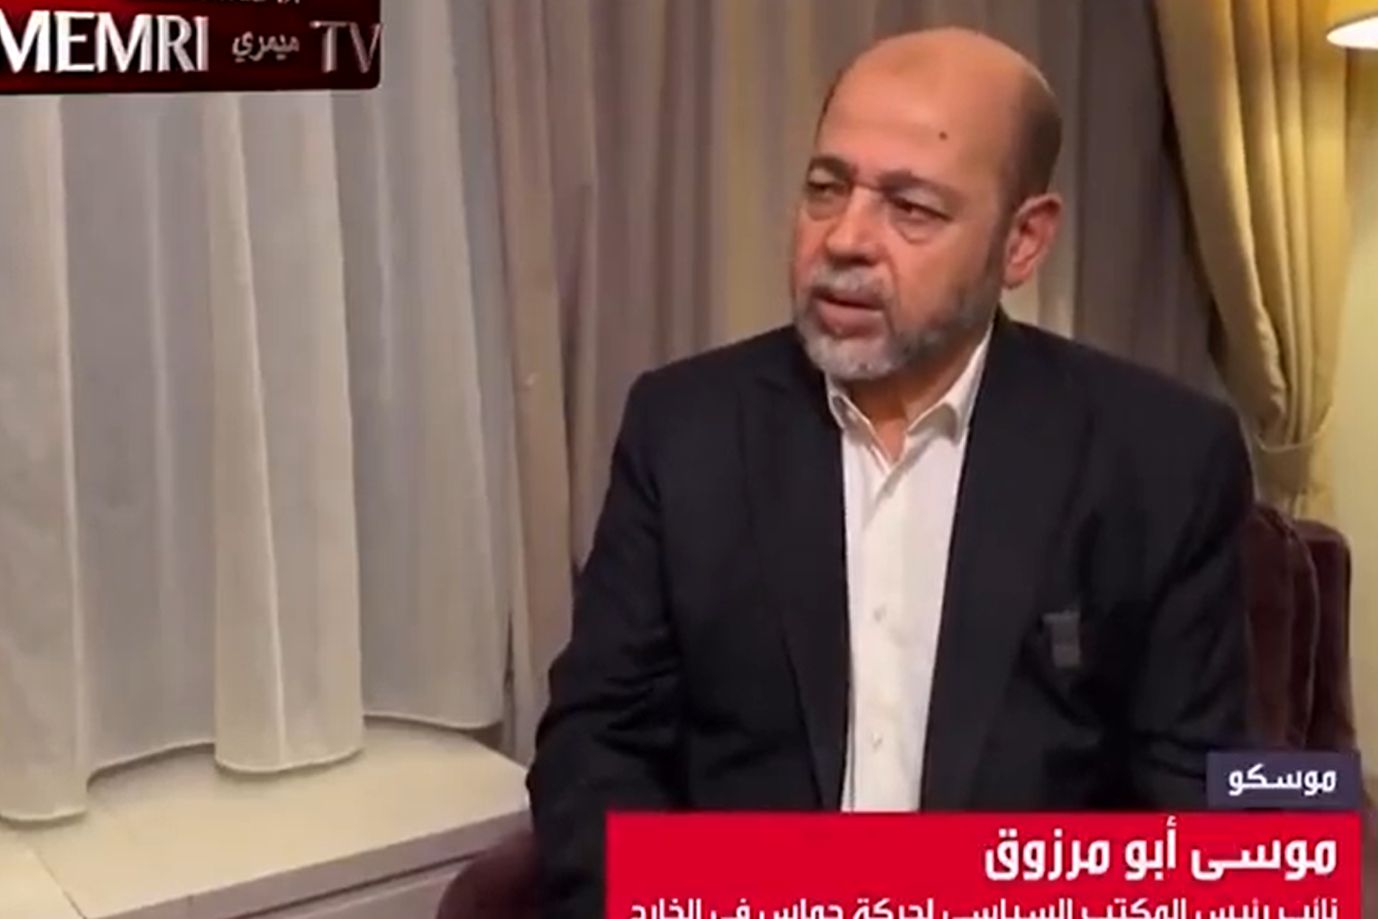 Zaprosili do TV członka Hamasu. Okrutne słowa w programie na żywo